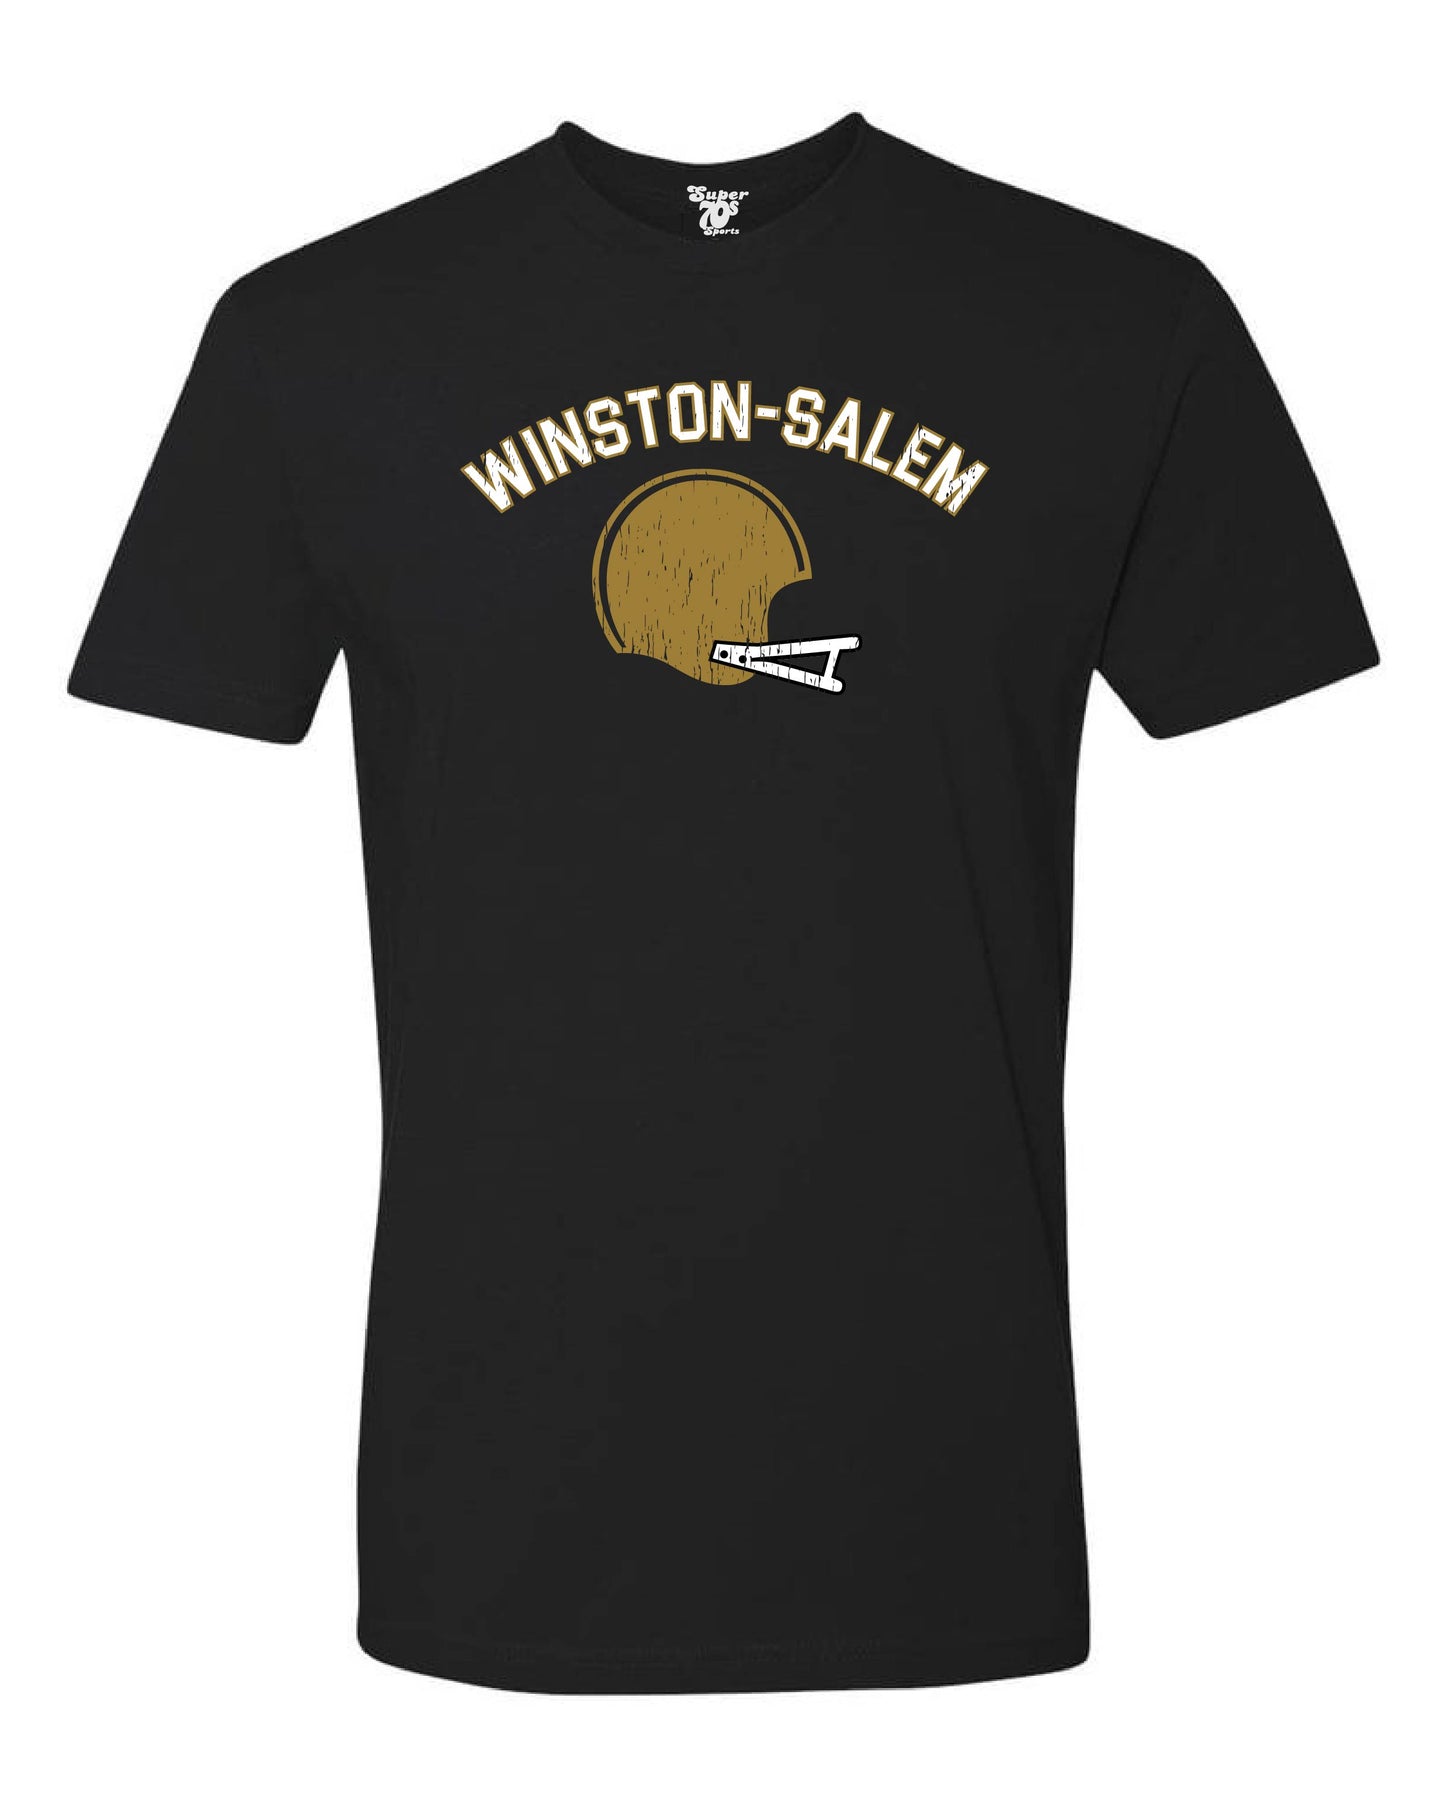 Winston-Salem Football Tee